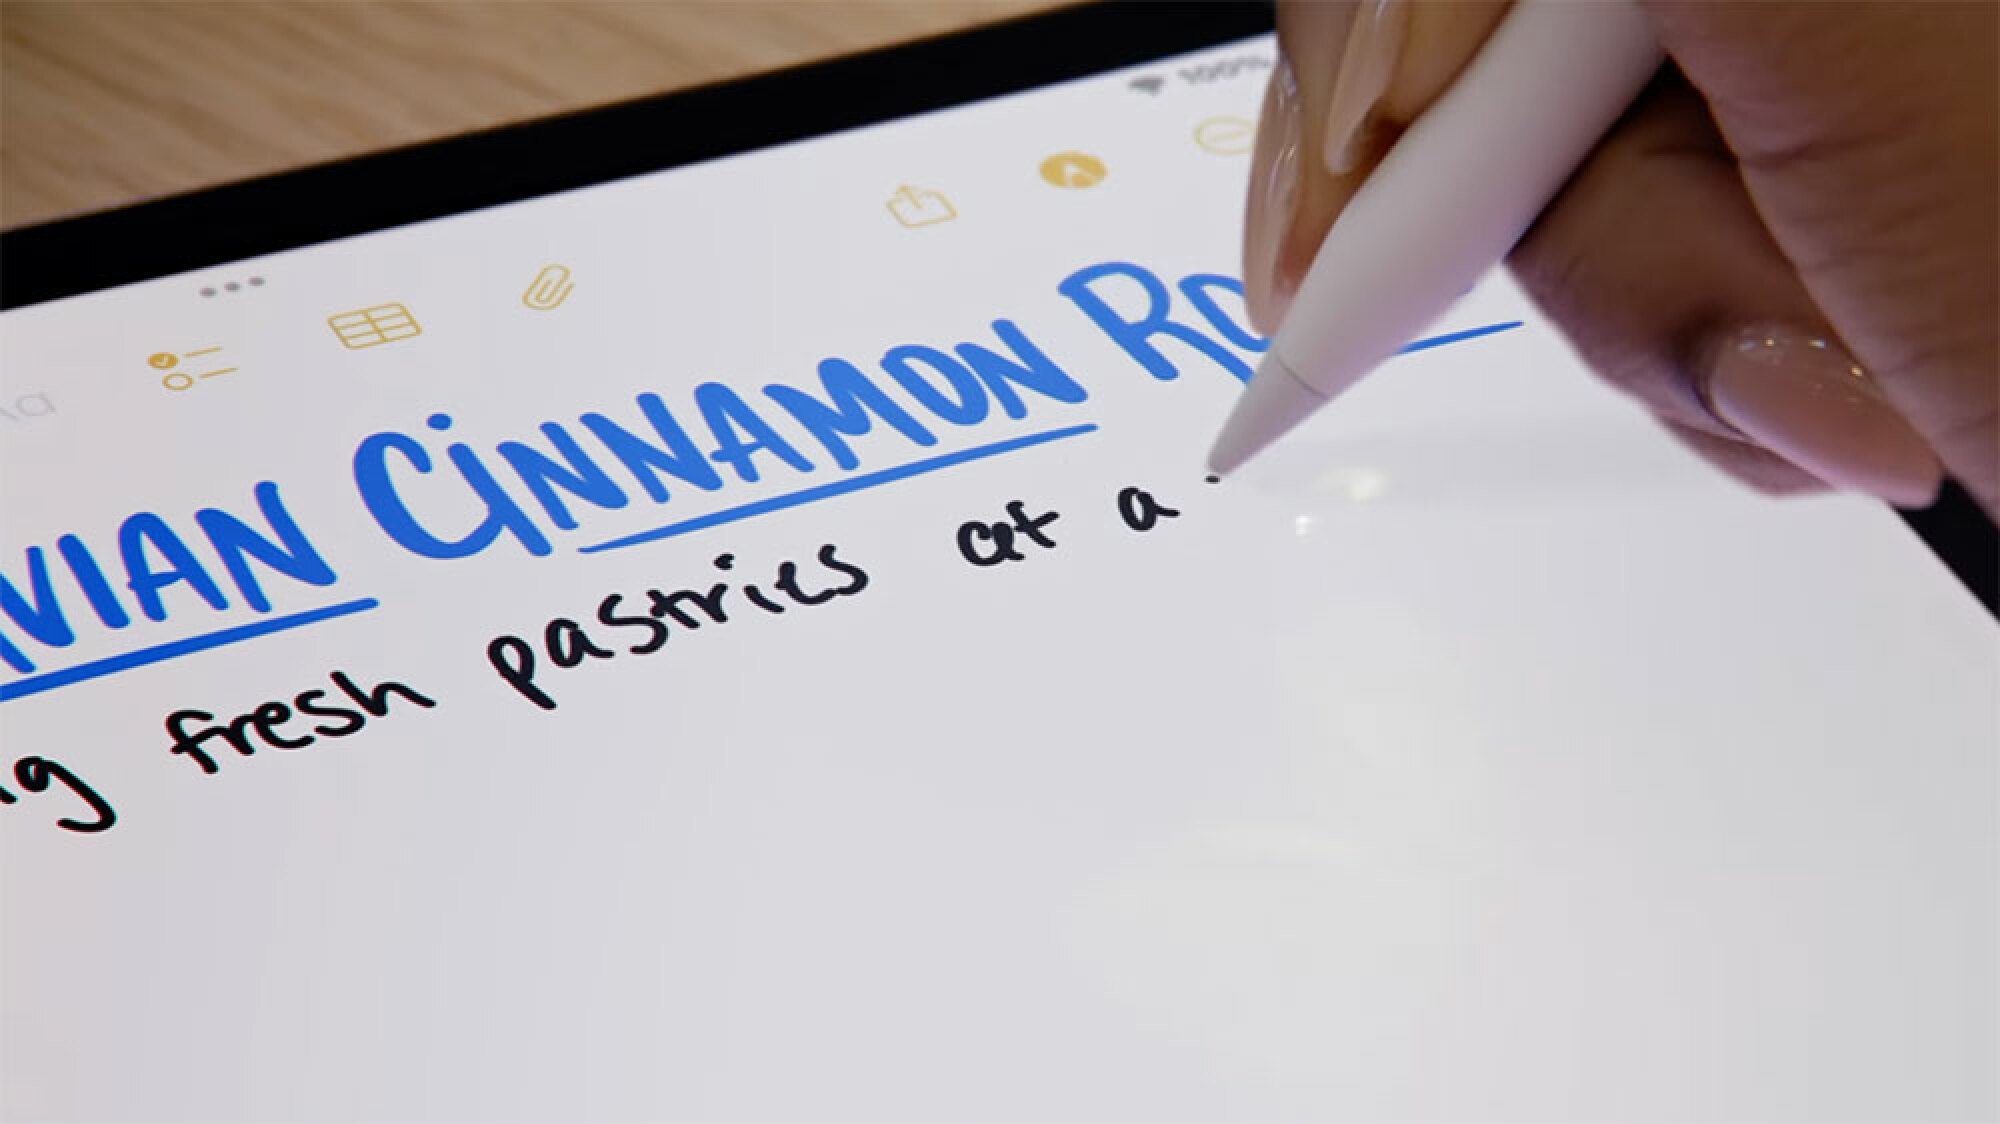 Image de quelqu’un écrivant sur un iPad avec un Apple Pencil.